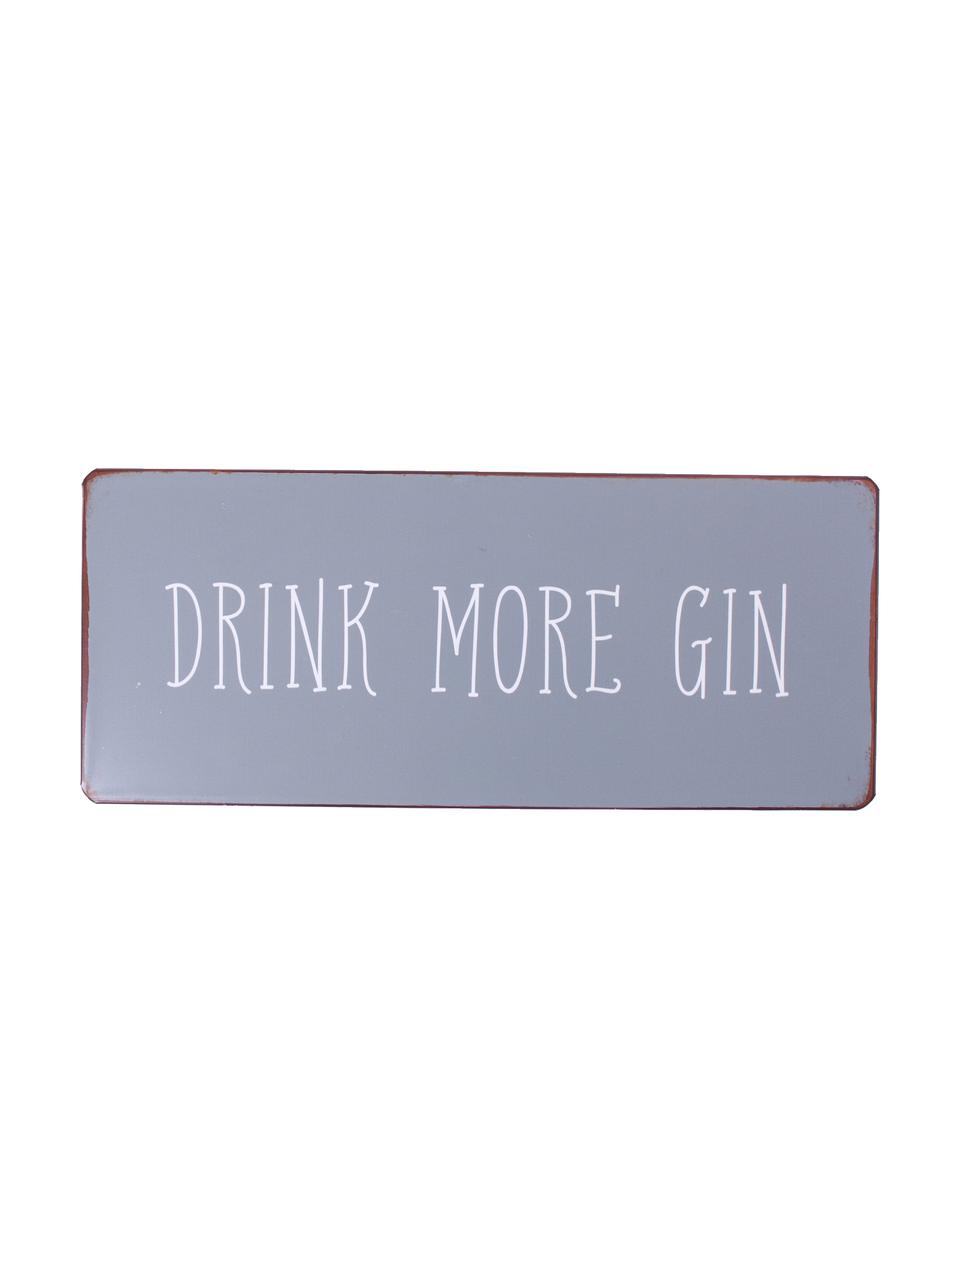 Cartello Drink more gin, Metallo, coperto con una pellicola a motivo, Grigio, bianco, color ruggine, Larg. 31 x Alt. 13 cm